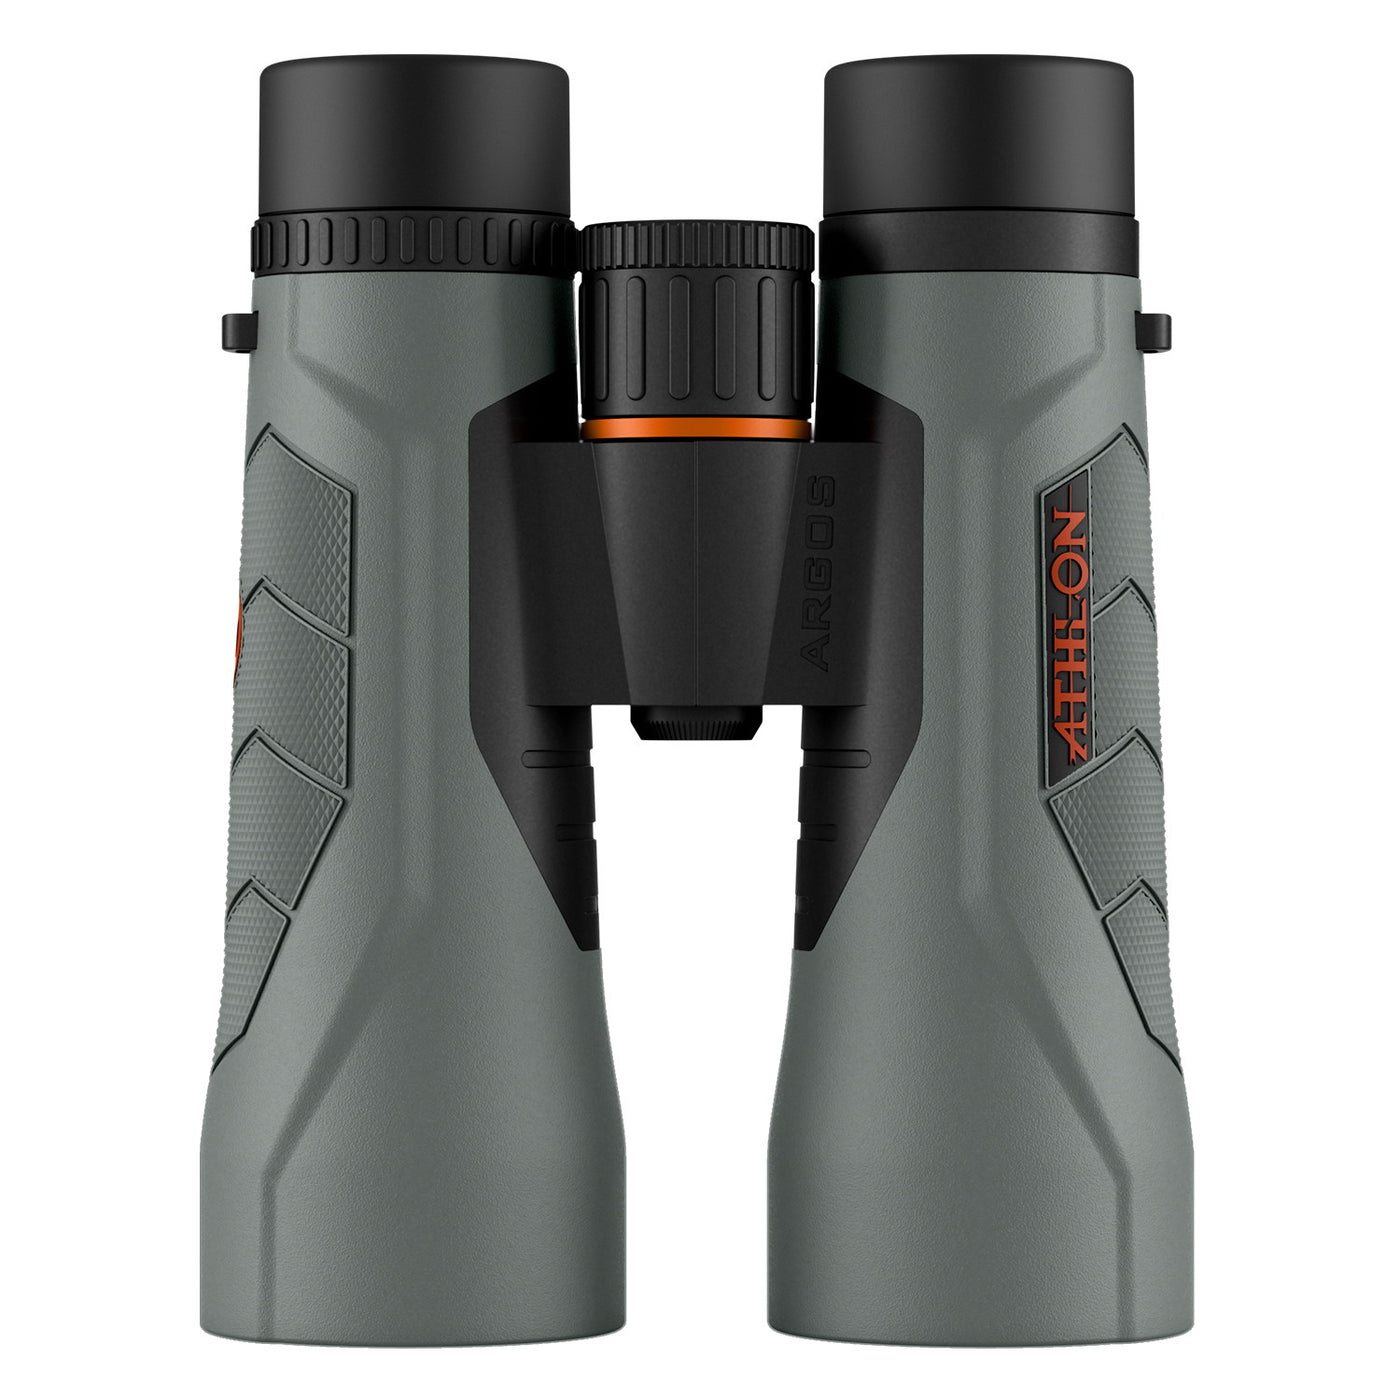 Athlon Argos G2 10x50 HD Binoculars